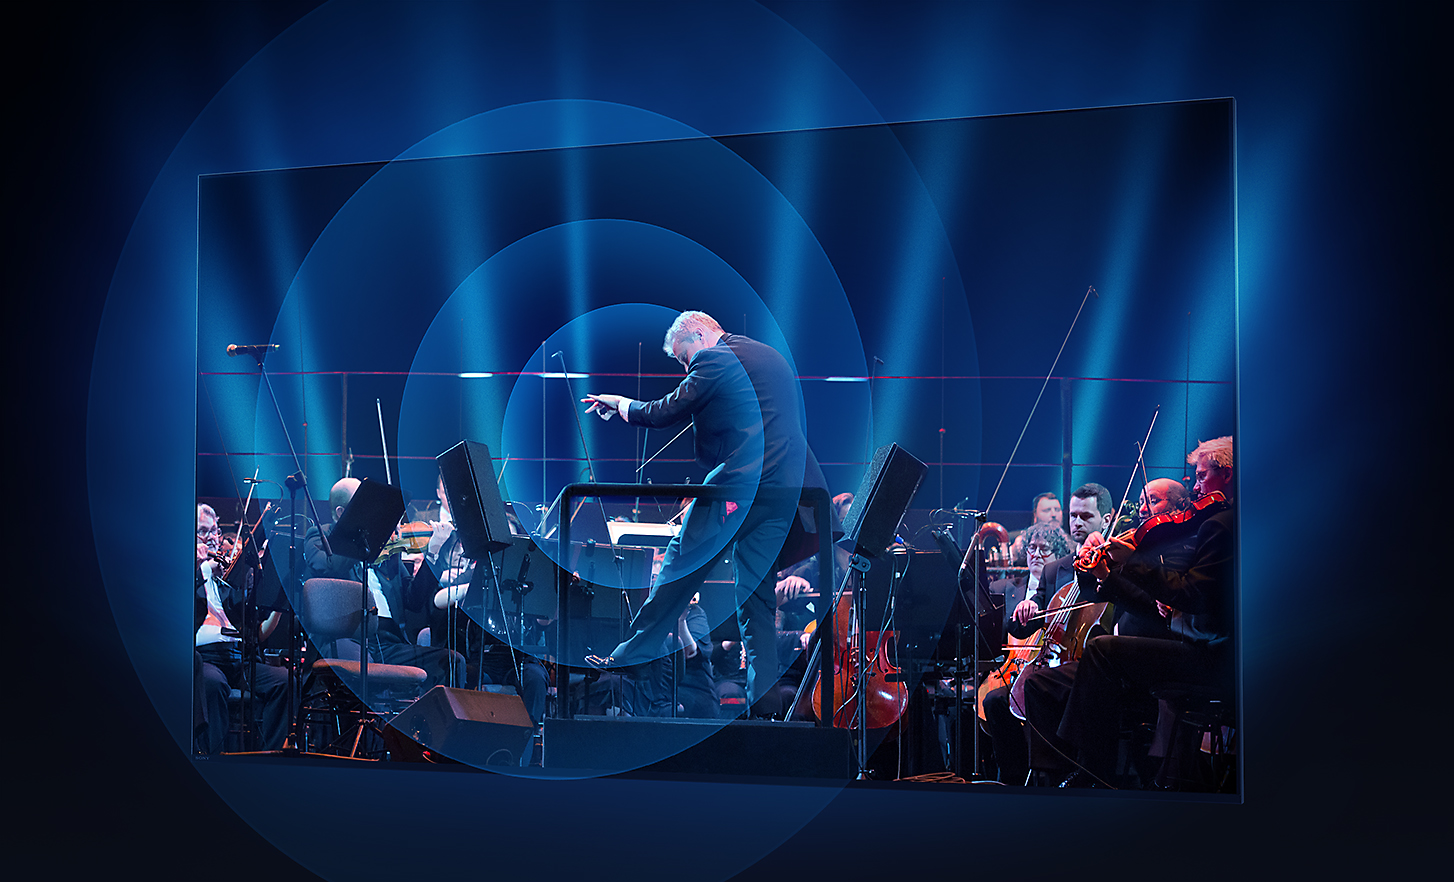 Οθόνη τηλεόρασης BRAVIA που δείχνει μαέστρο και ορχήστρα με κύματα ήχου που εκπέμπονται σε ομόκεντρους κύκλους από το κέντρο της οθόνης